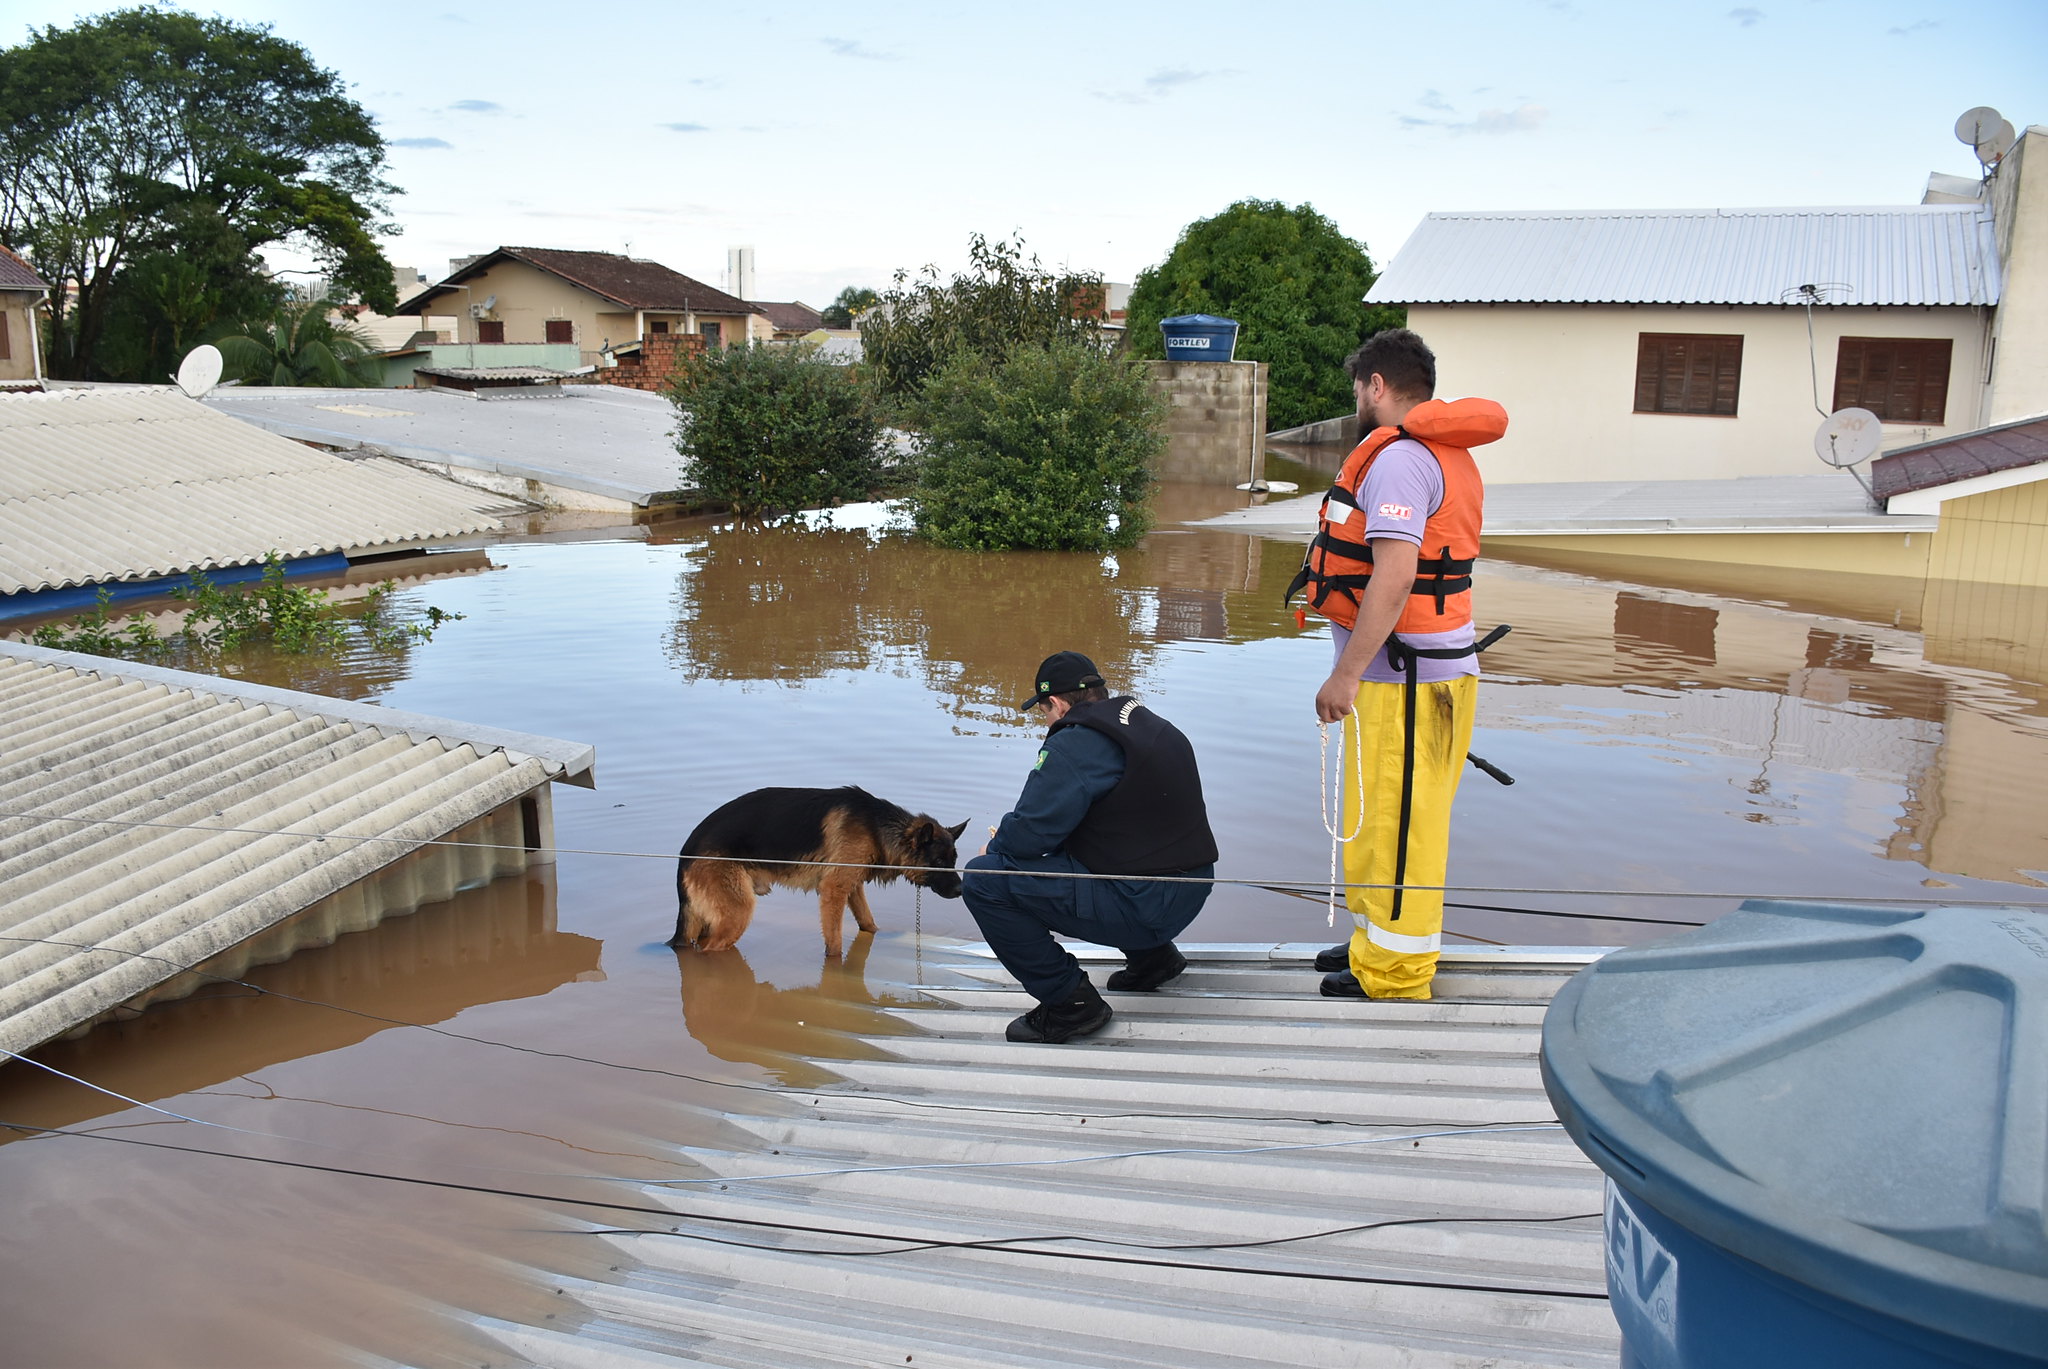 Em um cenário de enchente na cidade de Santa Maria, um cachorro pastor alemão é resgatado por dois homens